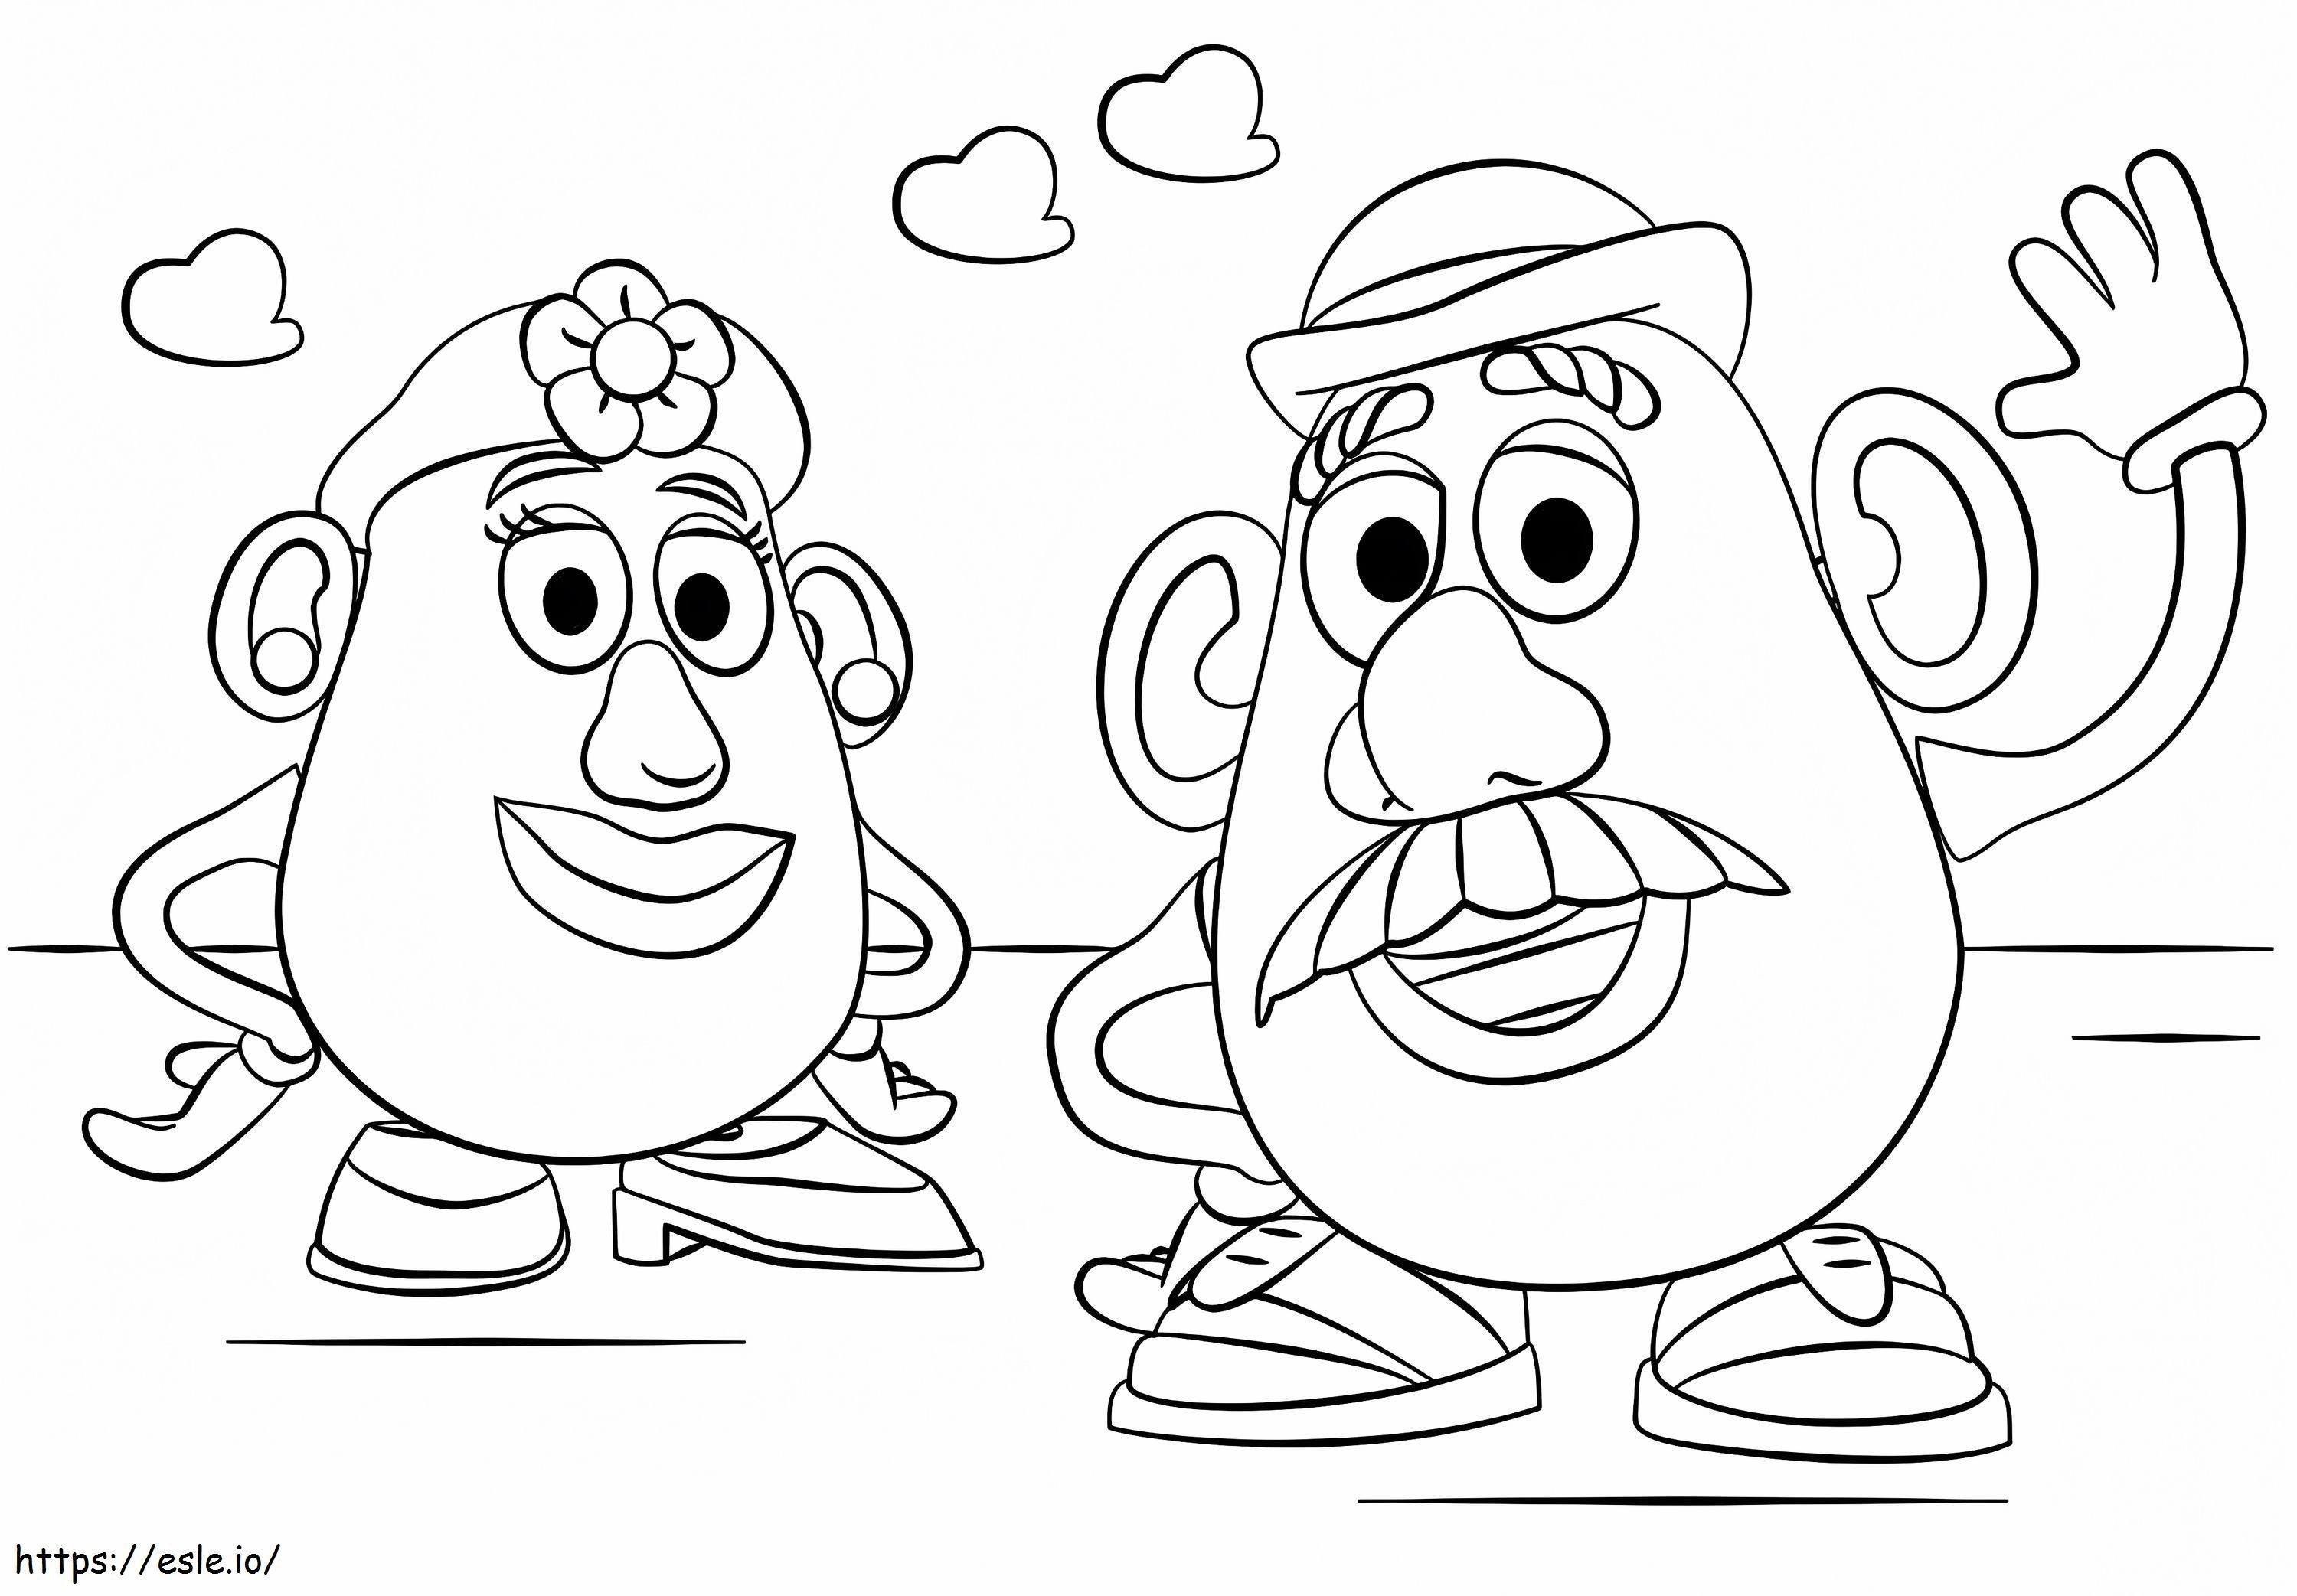 Sr. y Sra. Potato Head para colorear